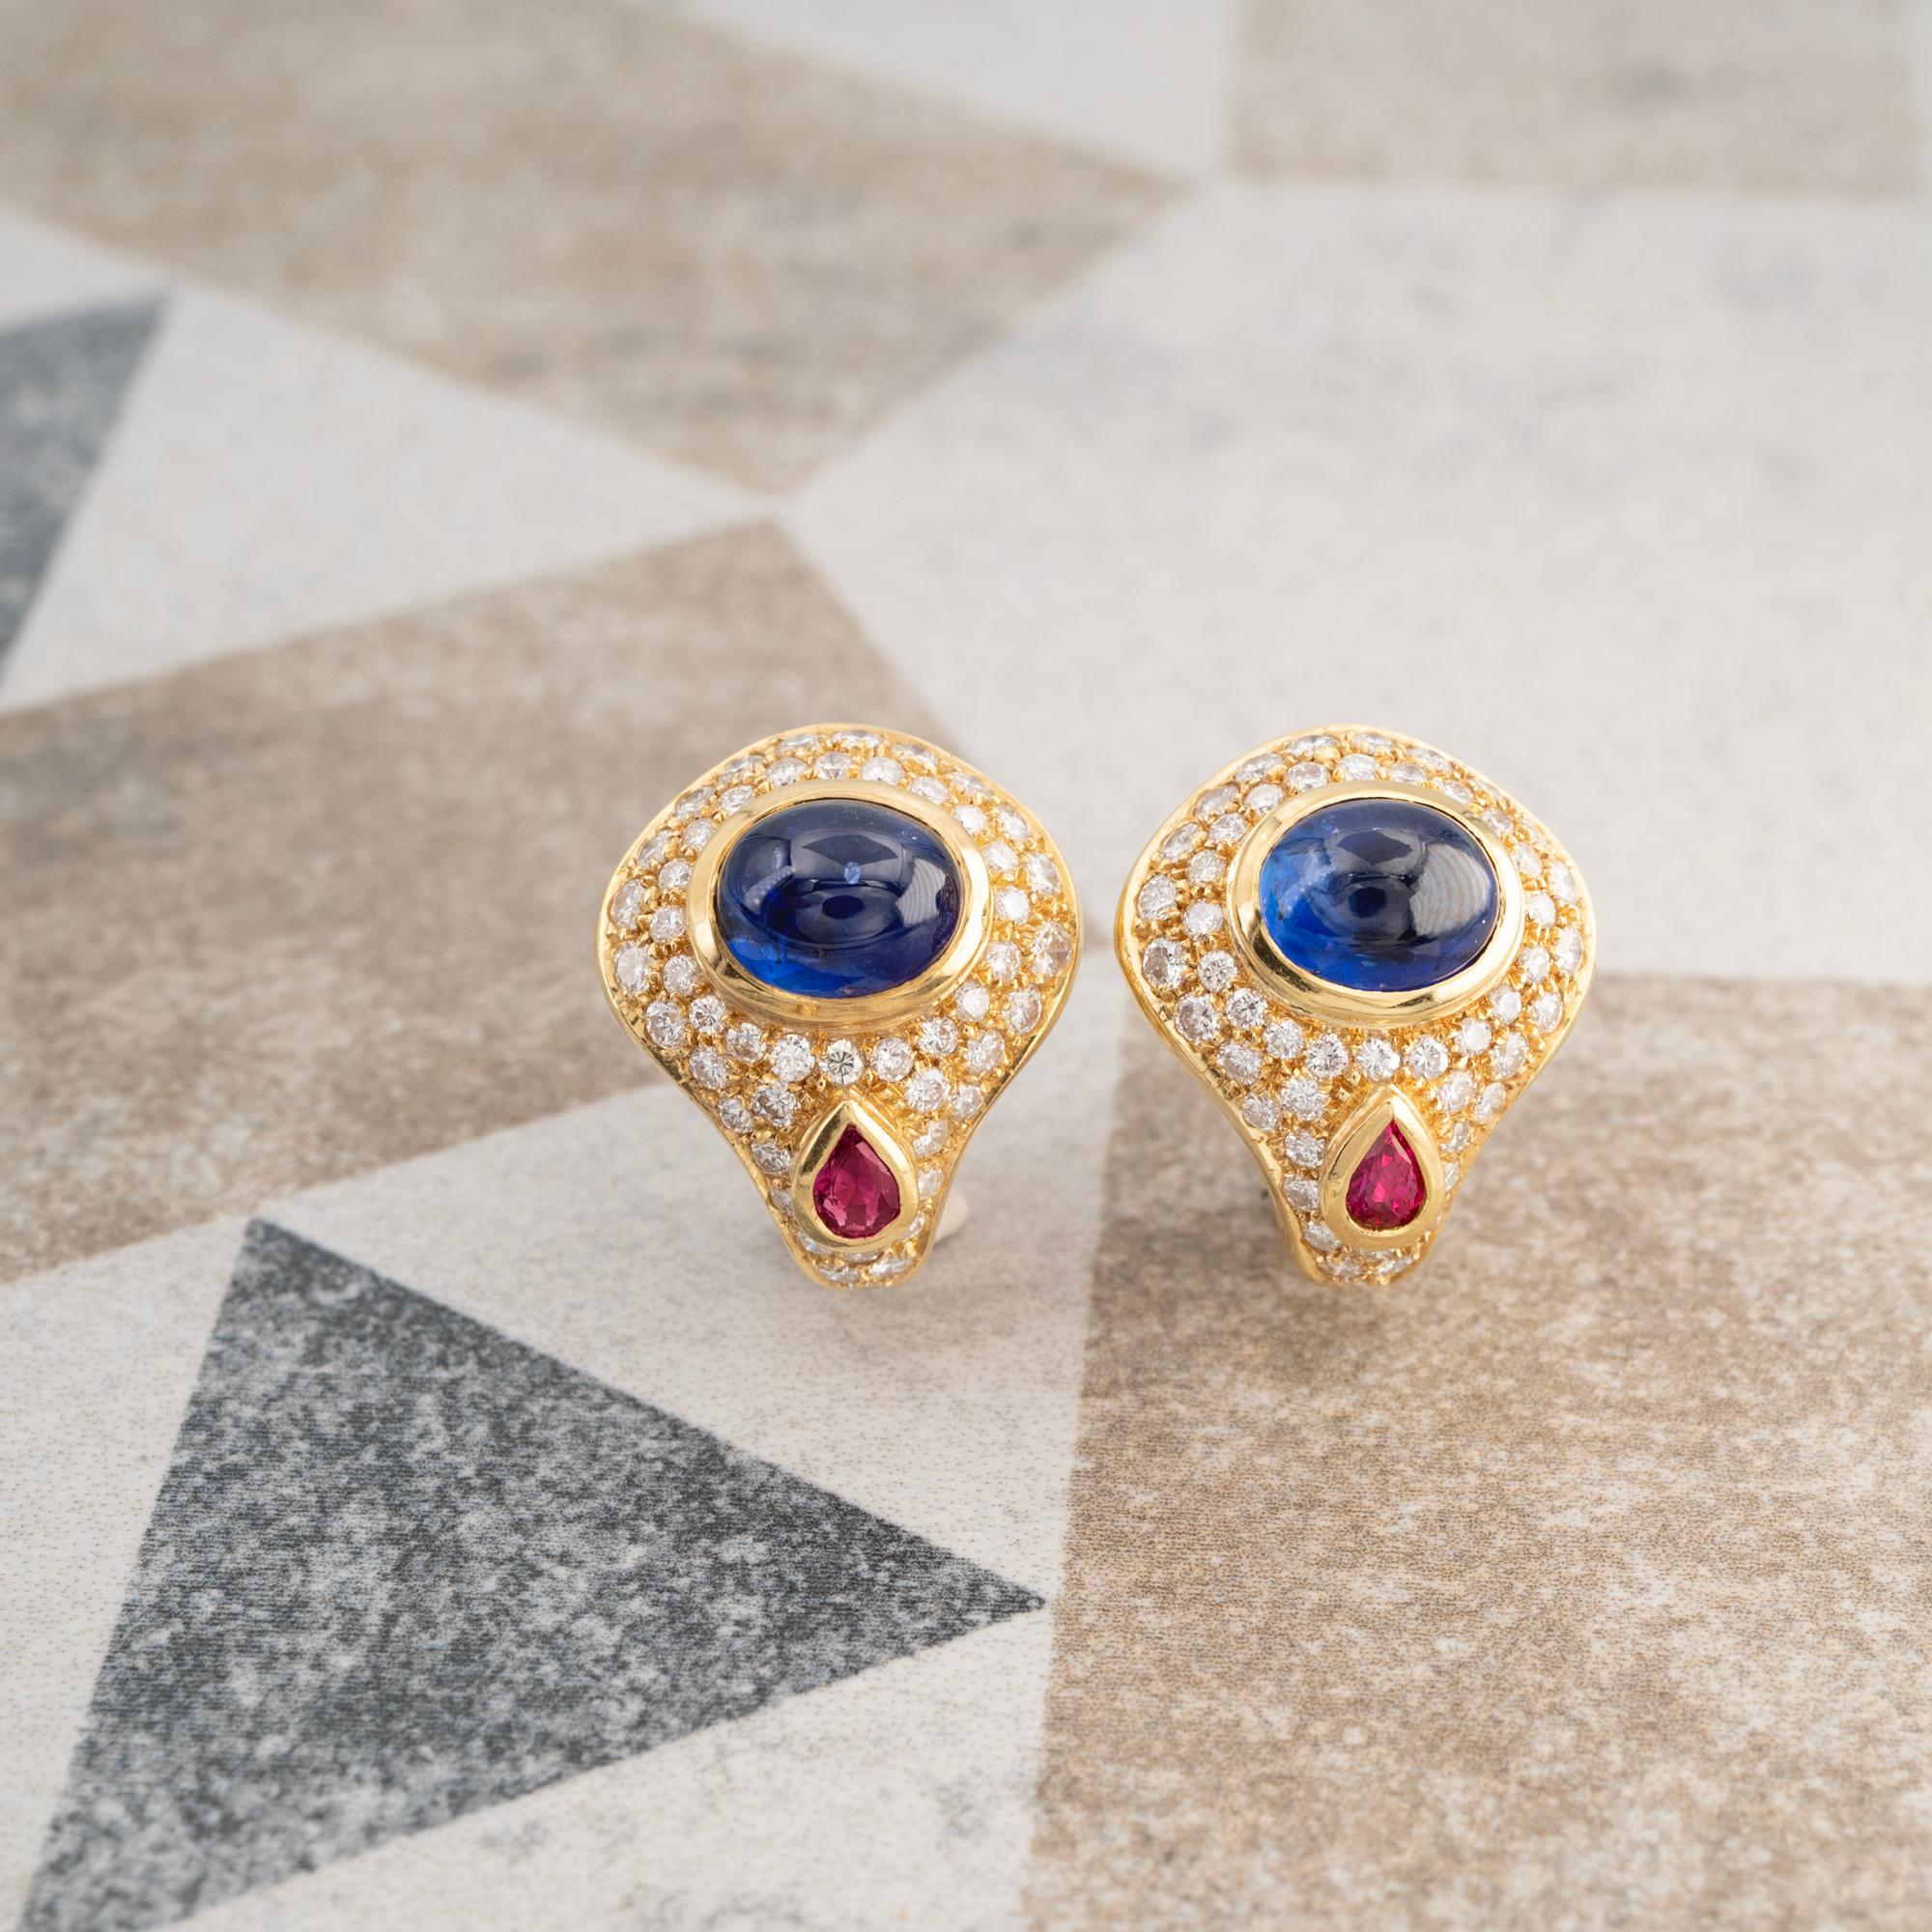 Magnifiques boucles d'oreilles de style bulgare, composées de saphirs cabochons bleus et de rubis en forme de poire. Chaque pierre précieuse a été sélectionnée pour la vivacité et l'intensité de sa couleur. Pour compléter ces pierres étonnantes, les